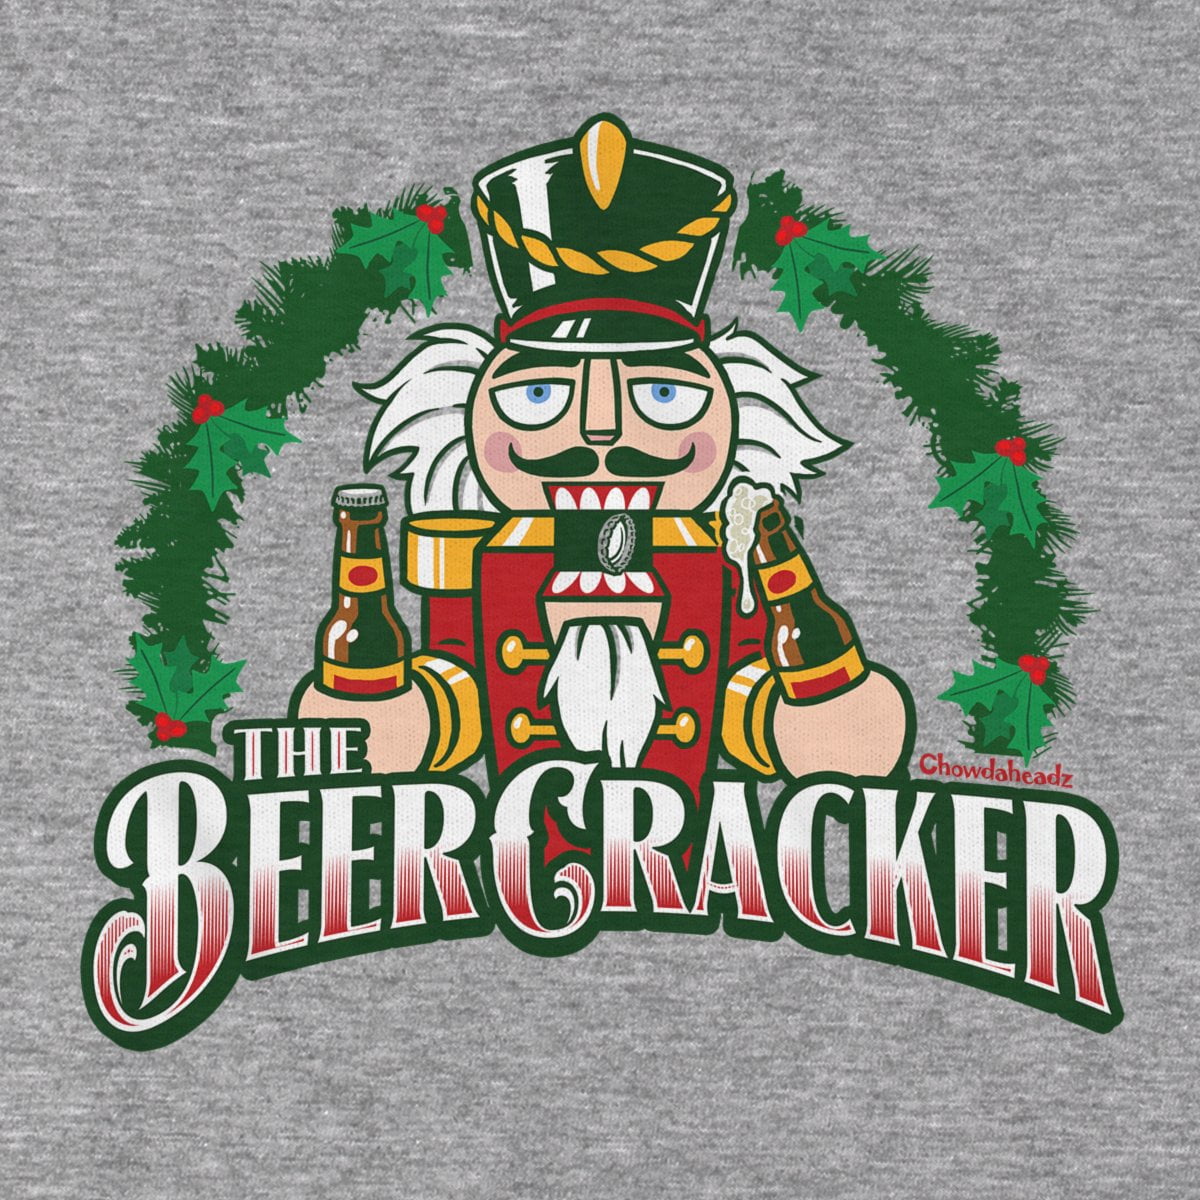 The BeerCracker T-Shirt - Chowdaheadz